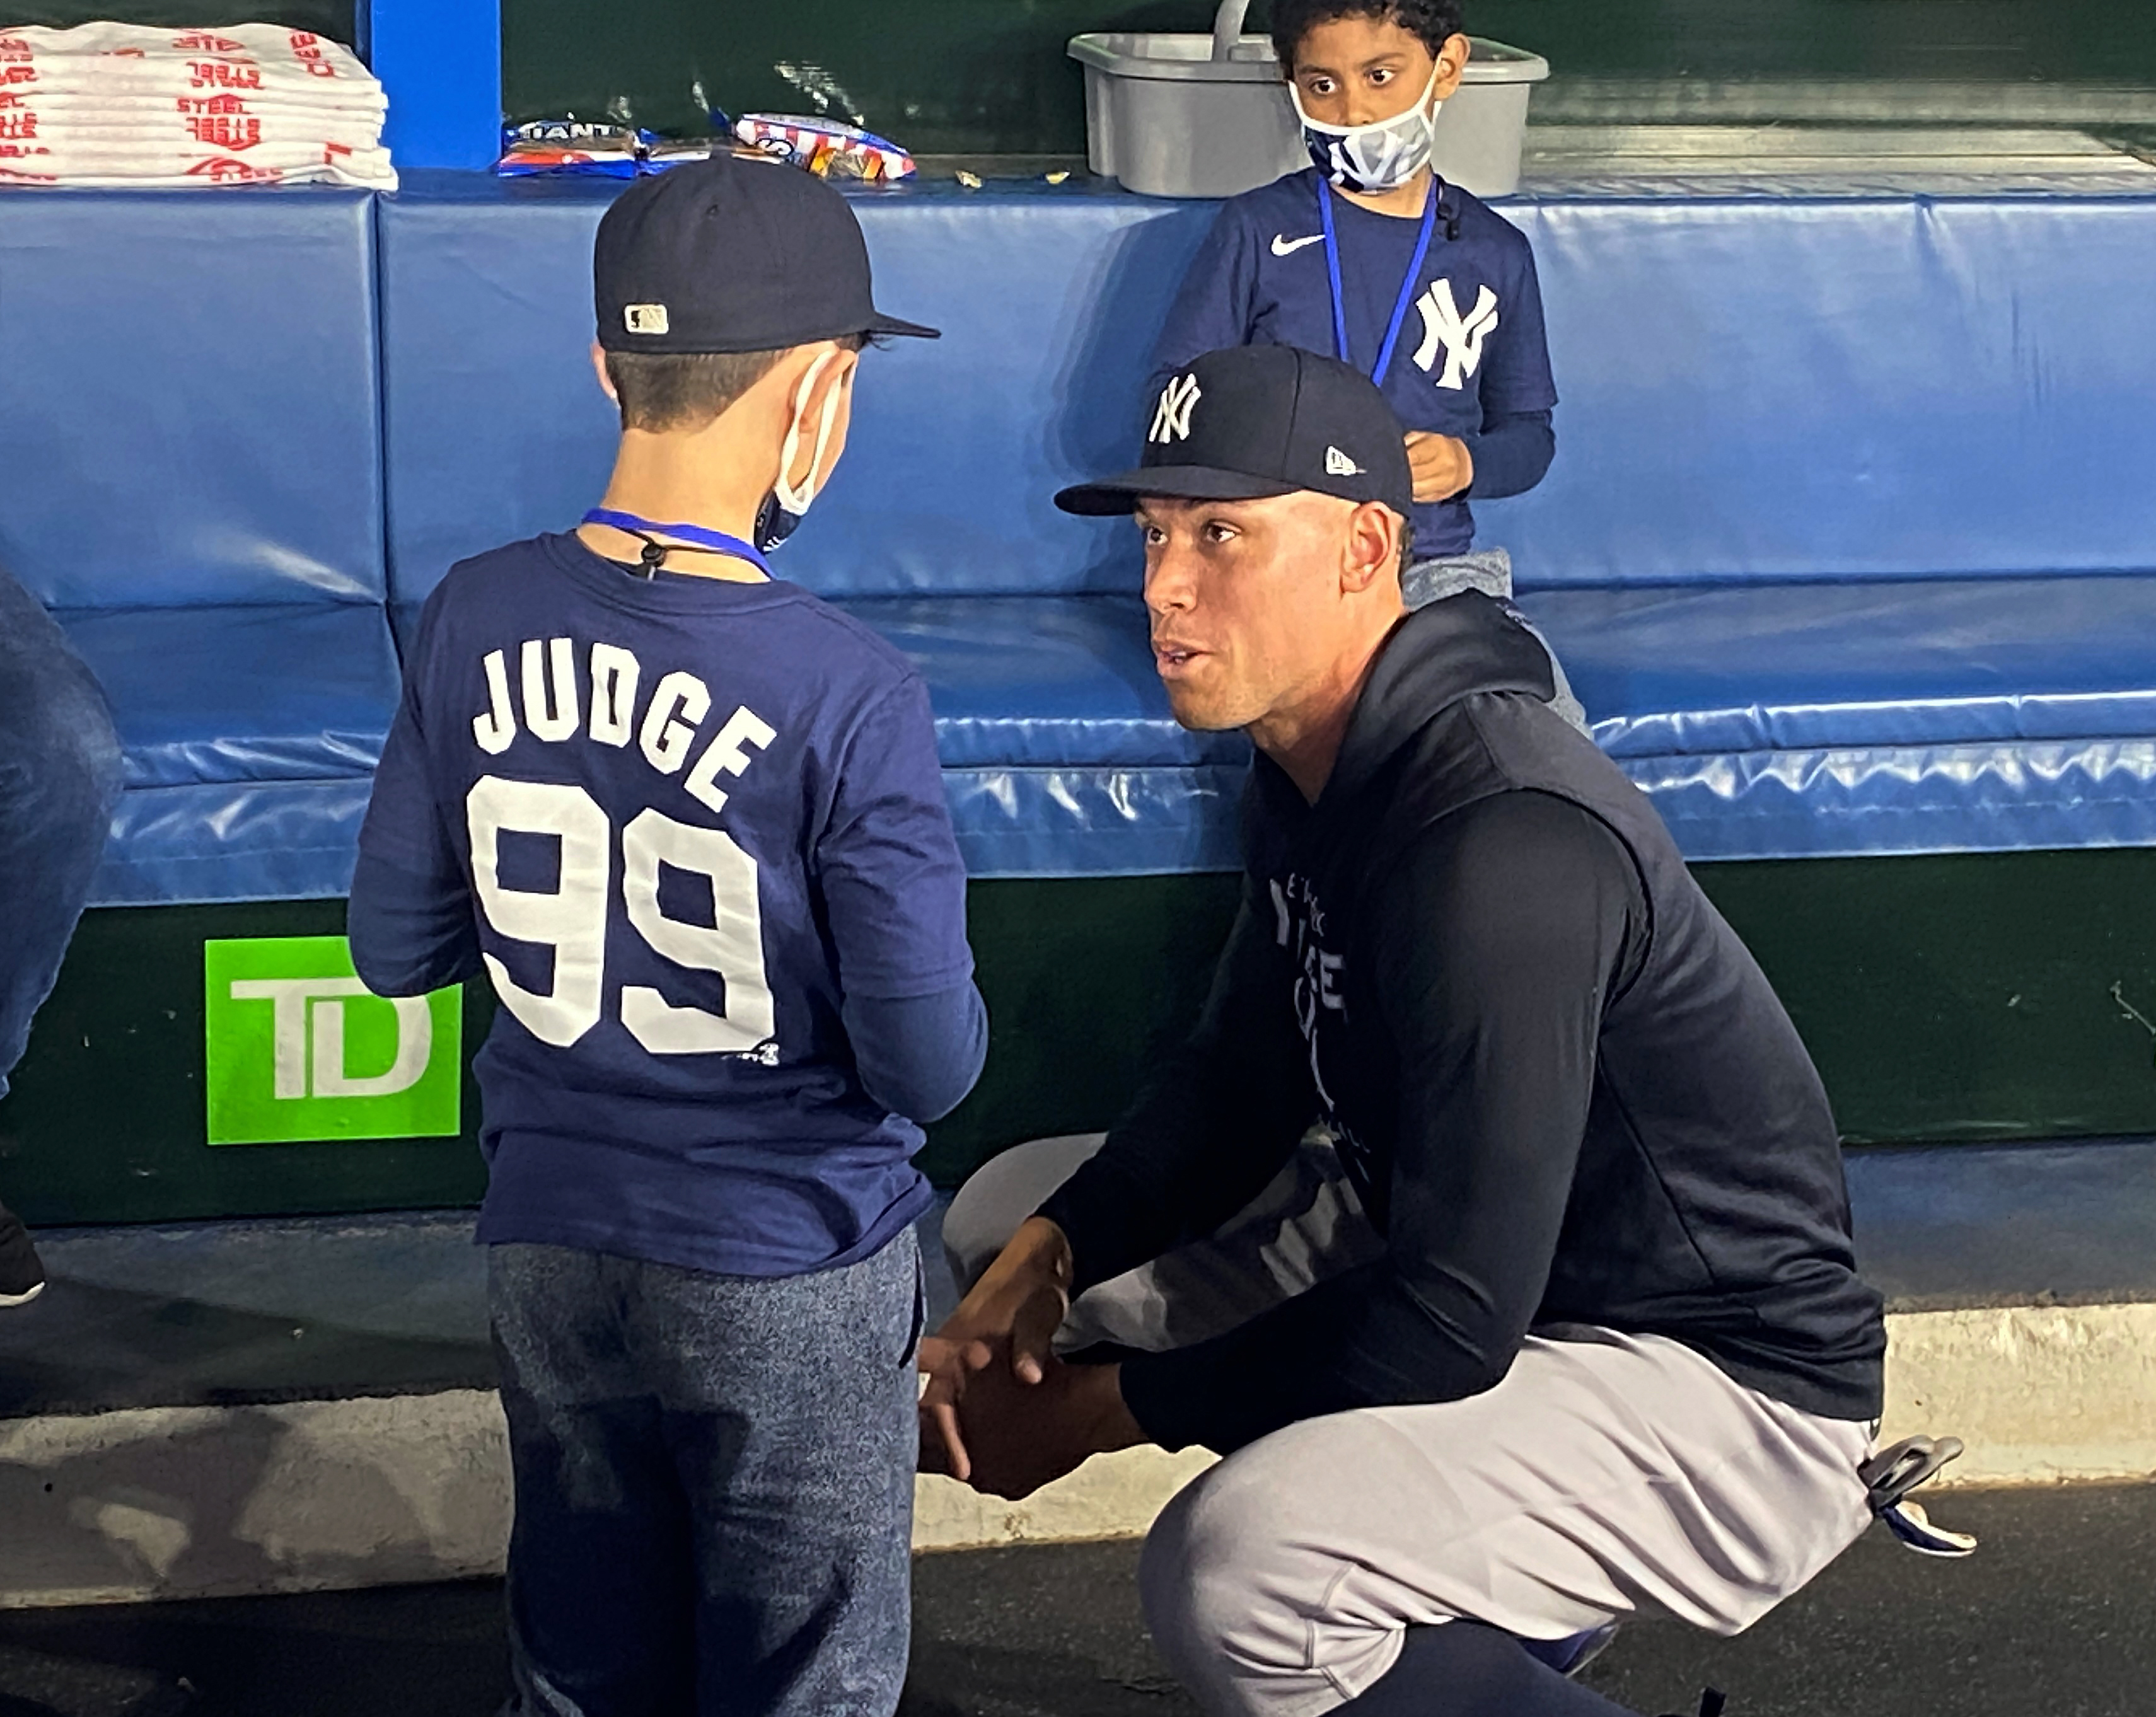 Yankees' Aaron Judge on wearing 99, not his favorite number 